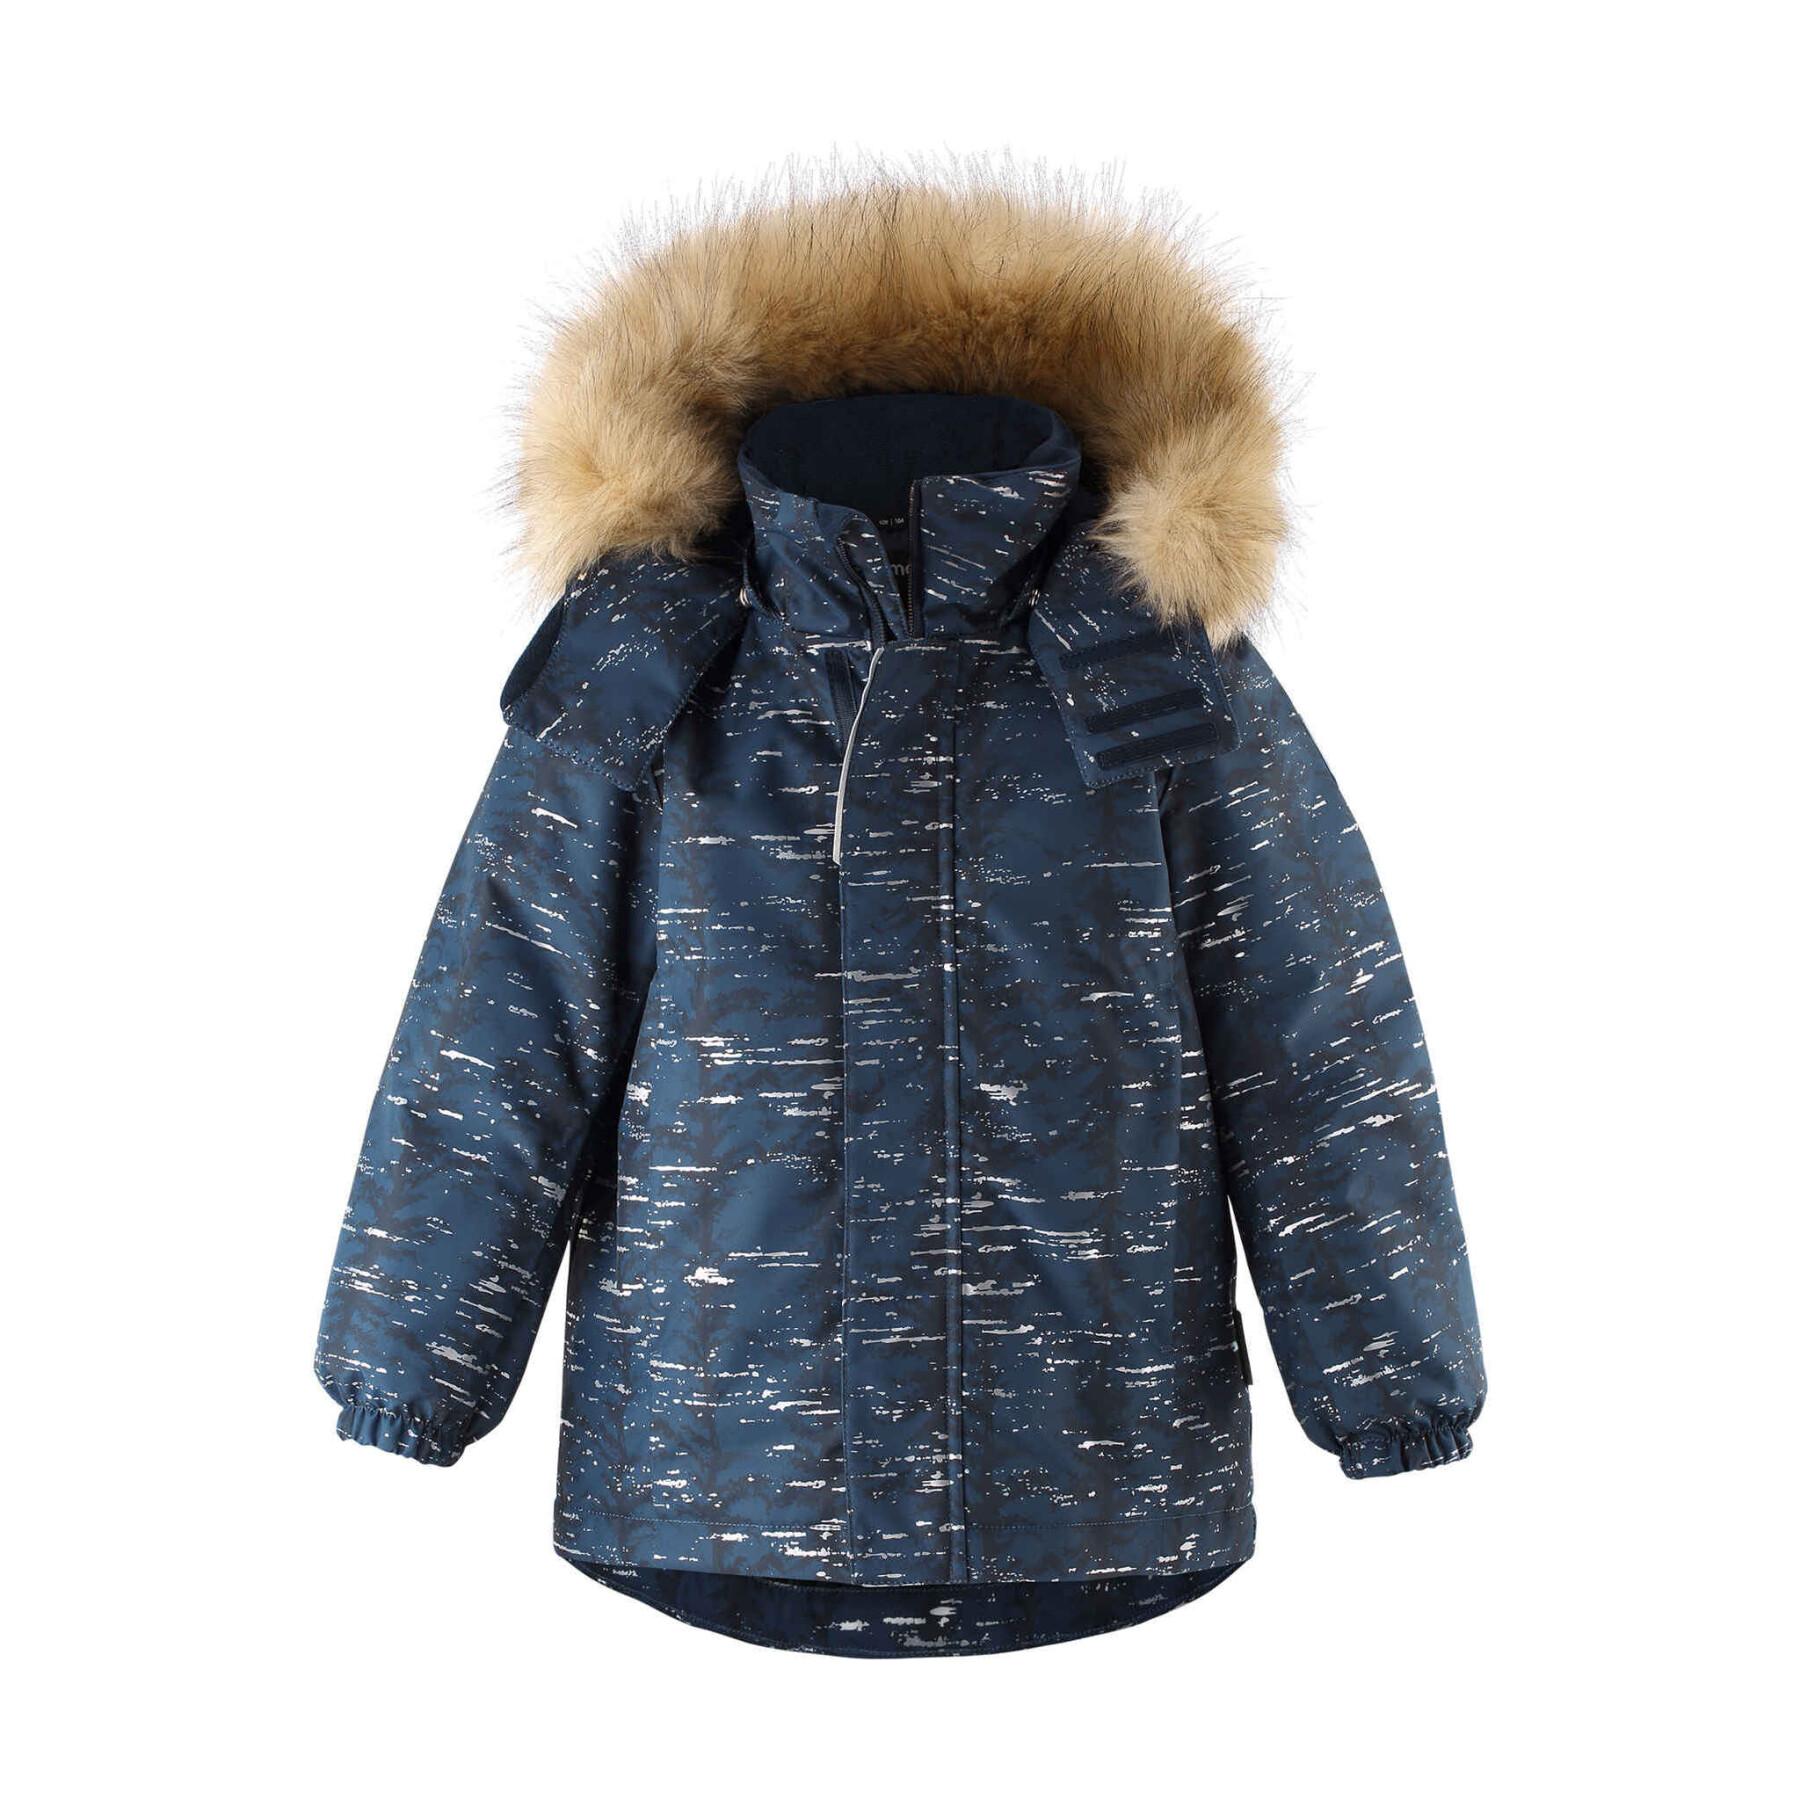 Waterproof jacket for children Reima Sprig